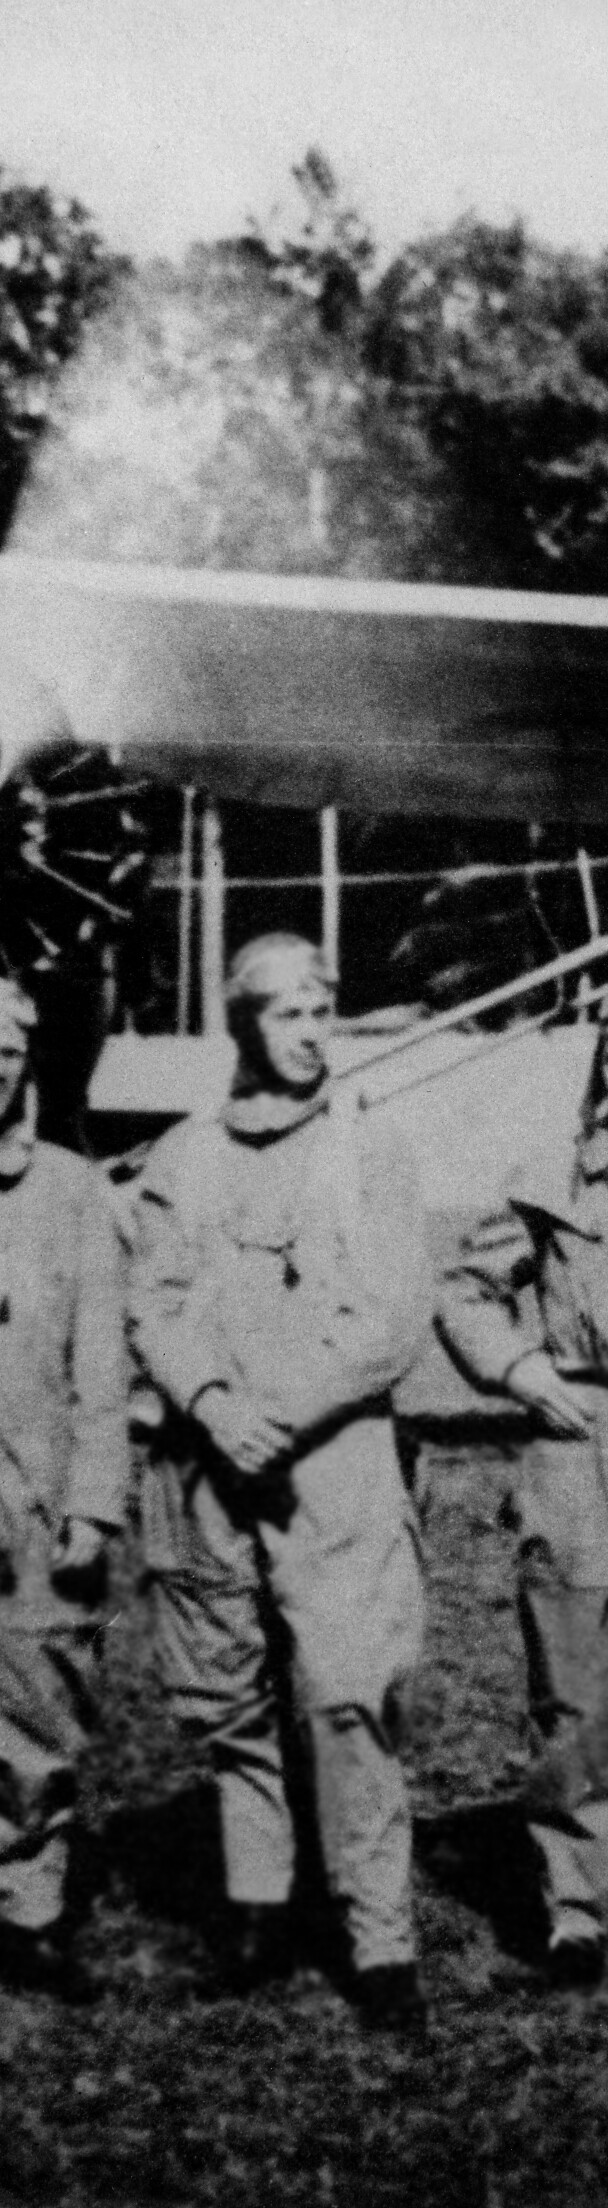 Luftwaffe pilots during World War II